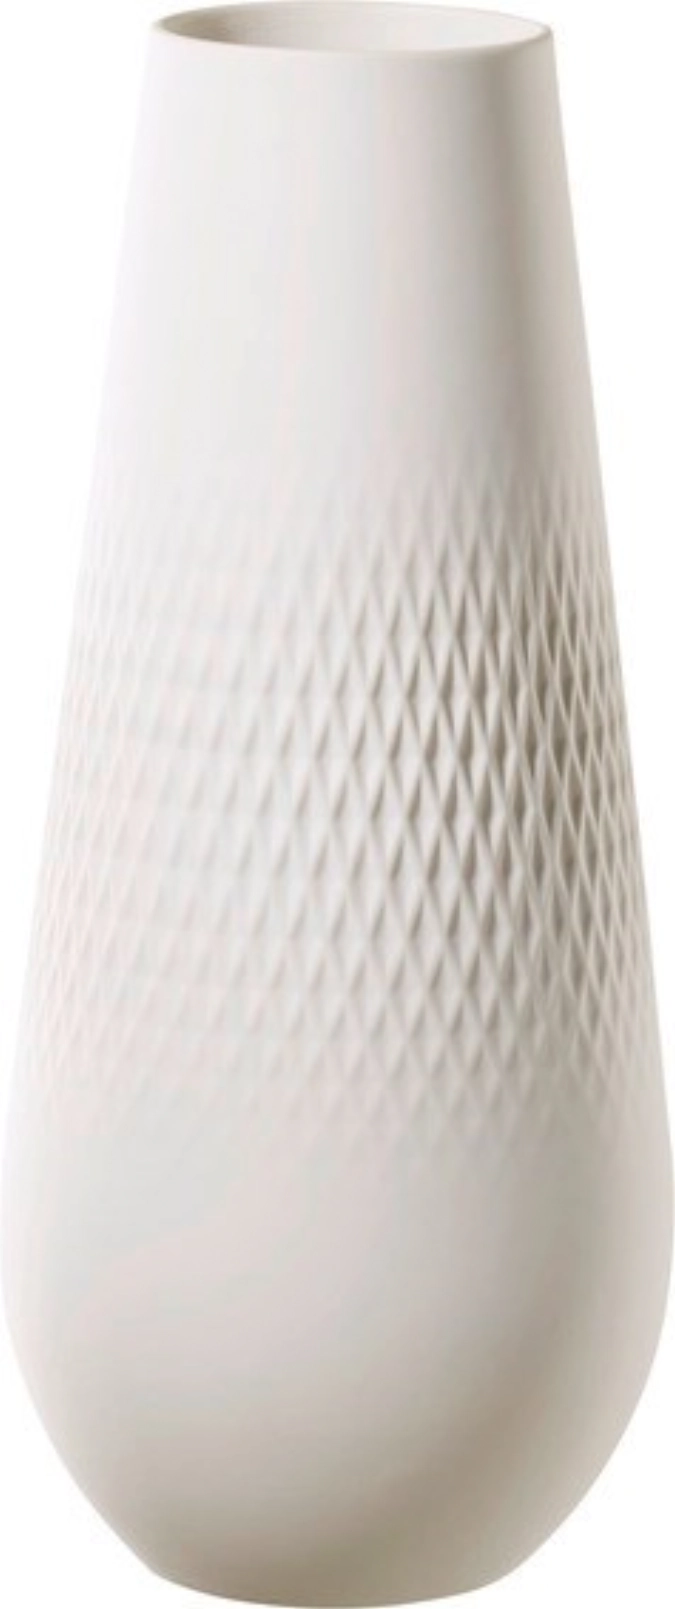 Manufacture Collier blanc Vase Carré hoch 11.5x11.5x26cm1.62